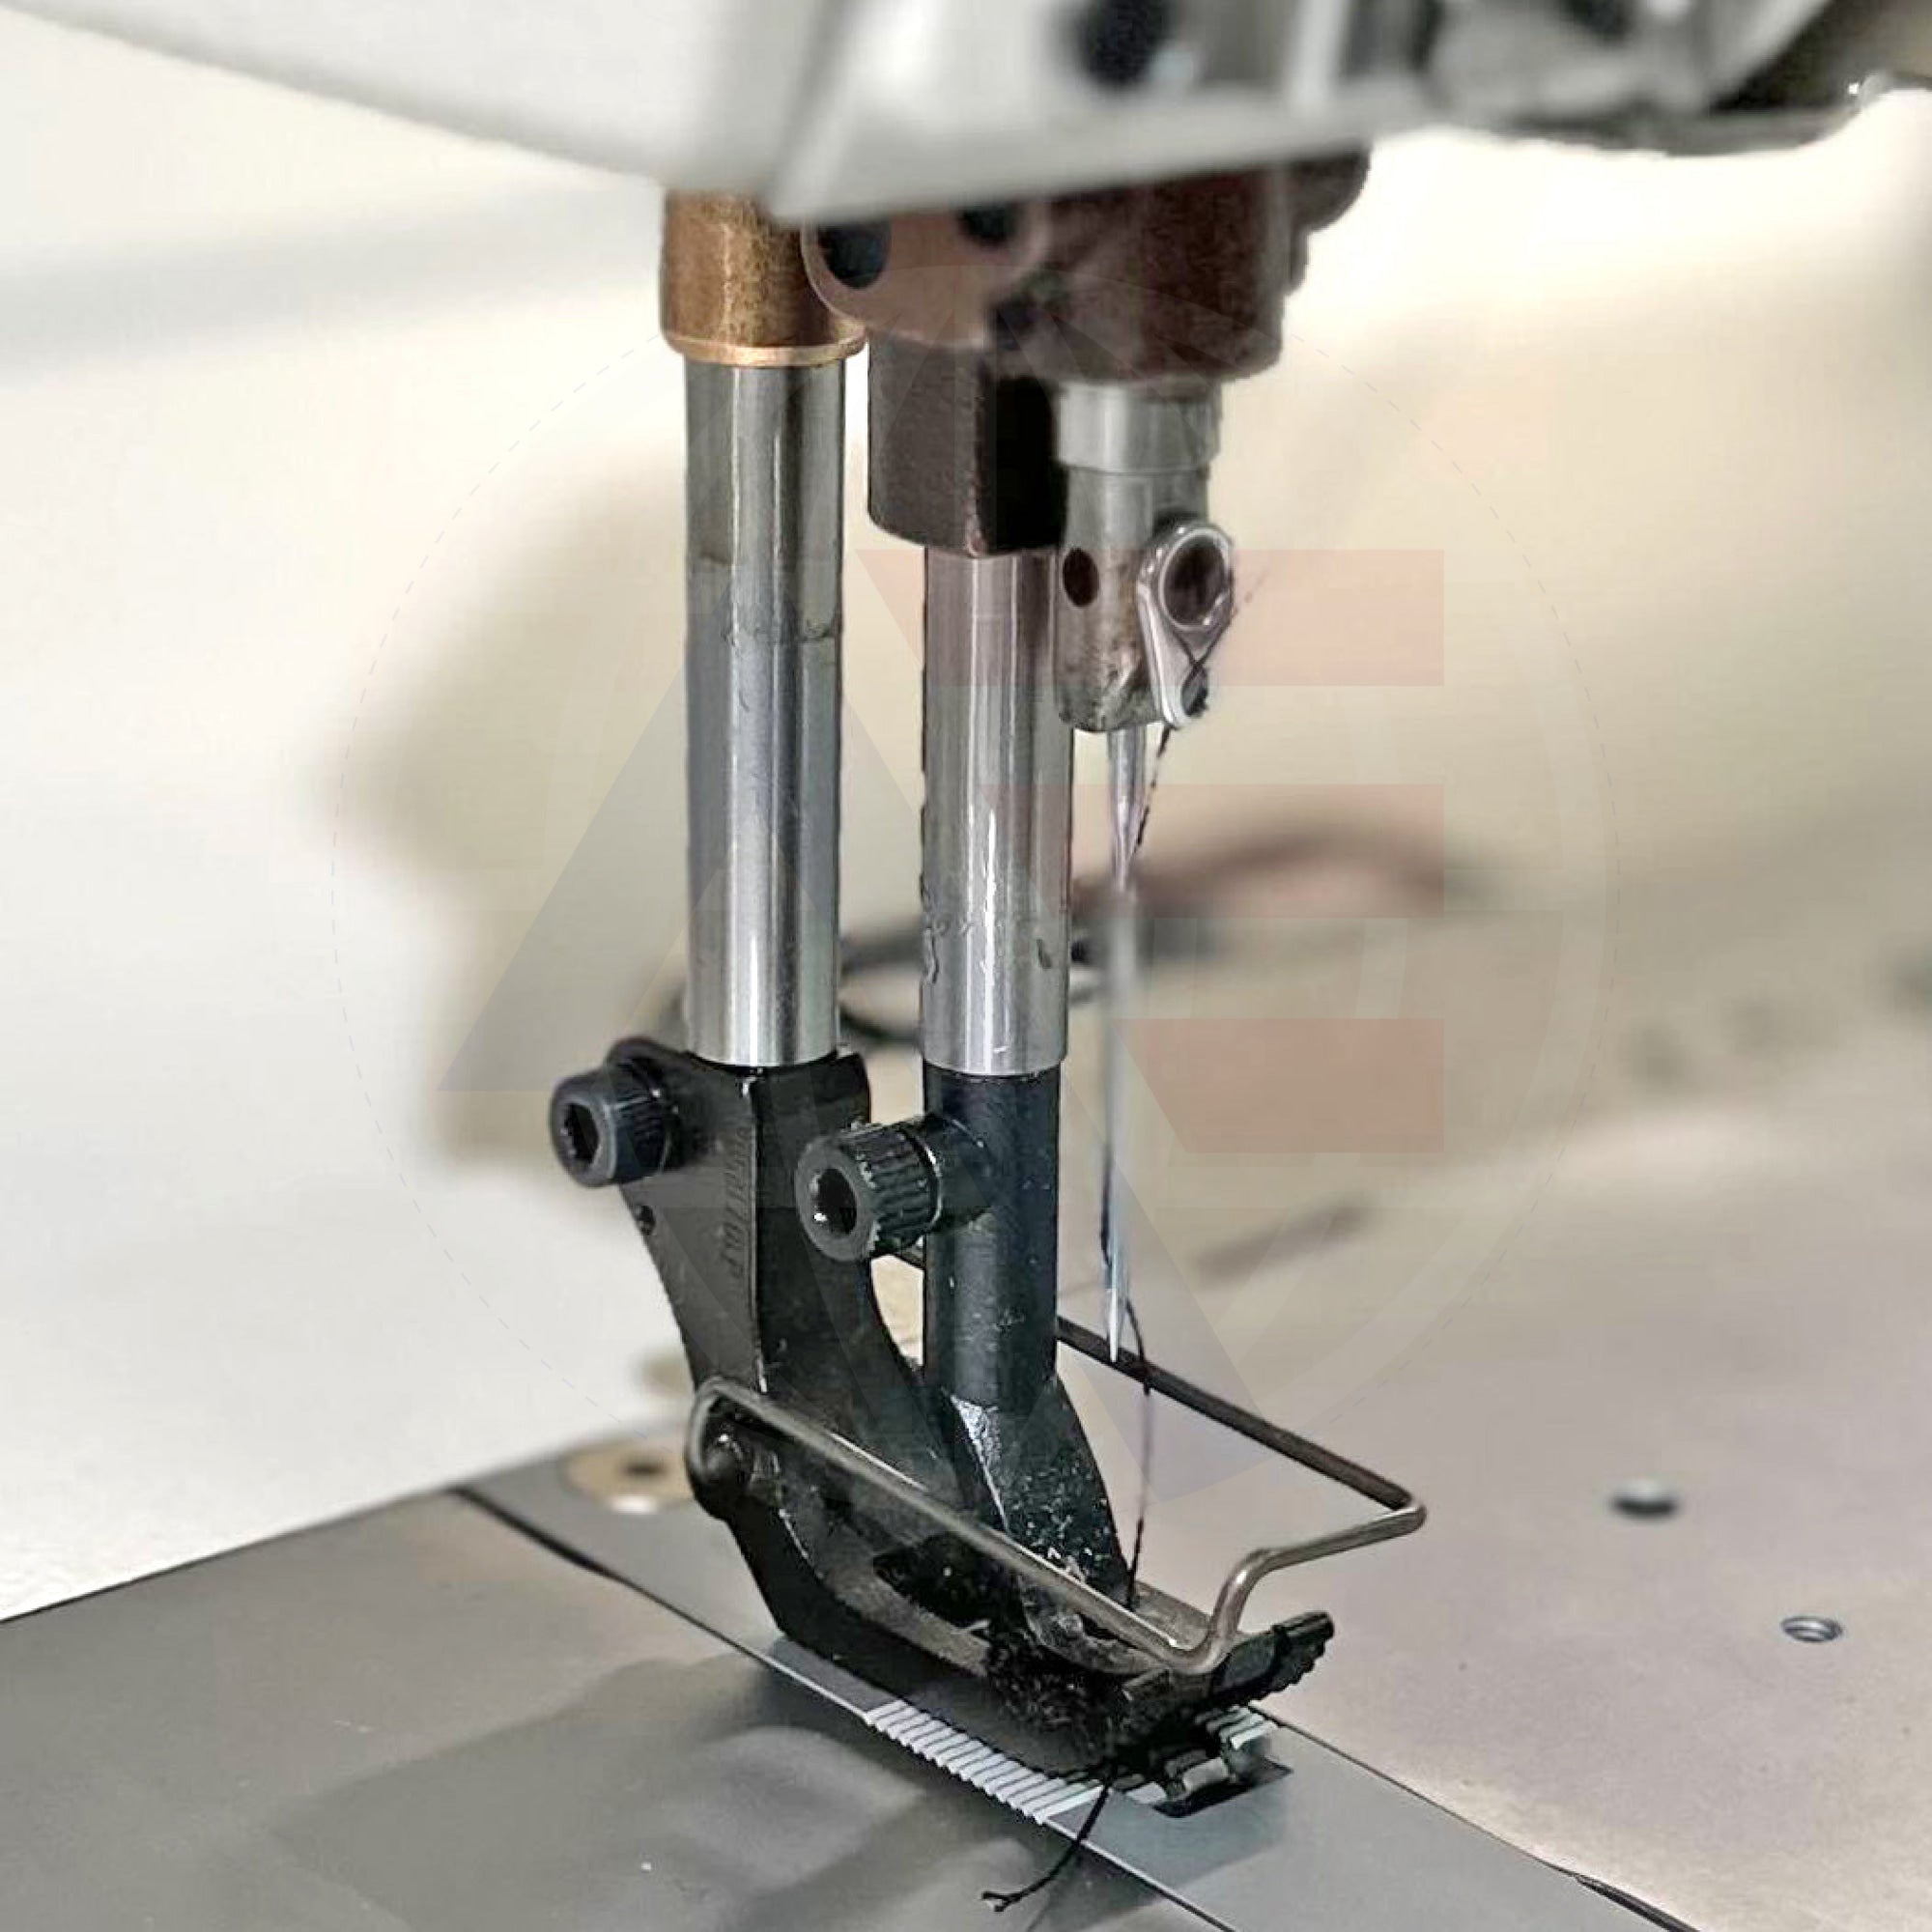 Juki Lu-2810-7 1-Needle Walking-Foot Lockstitch Machine (Auto-Functions) Sewing Machines